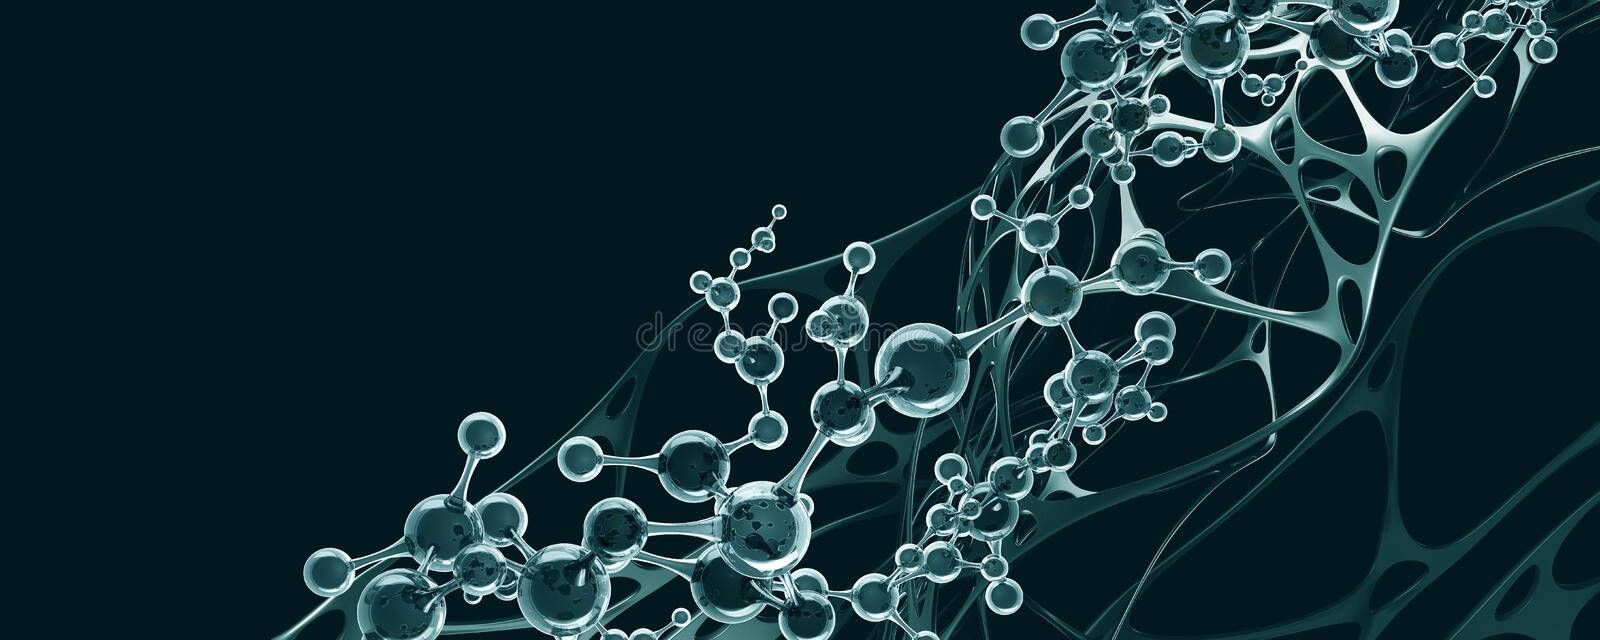 Wissenschaftlichedesktop-hintergrundbilder Chemischer Stränge Wallpaper